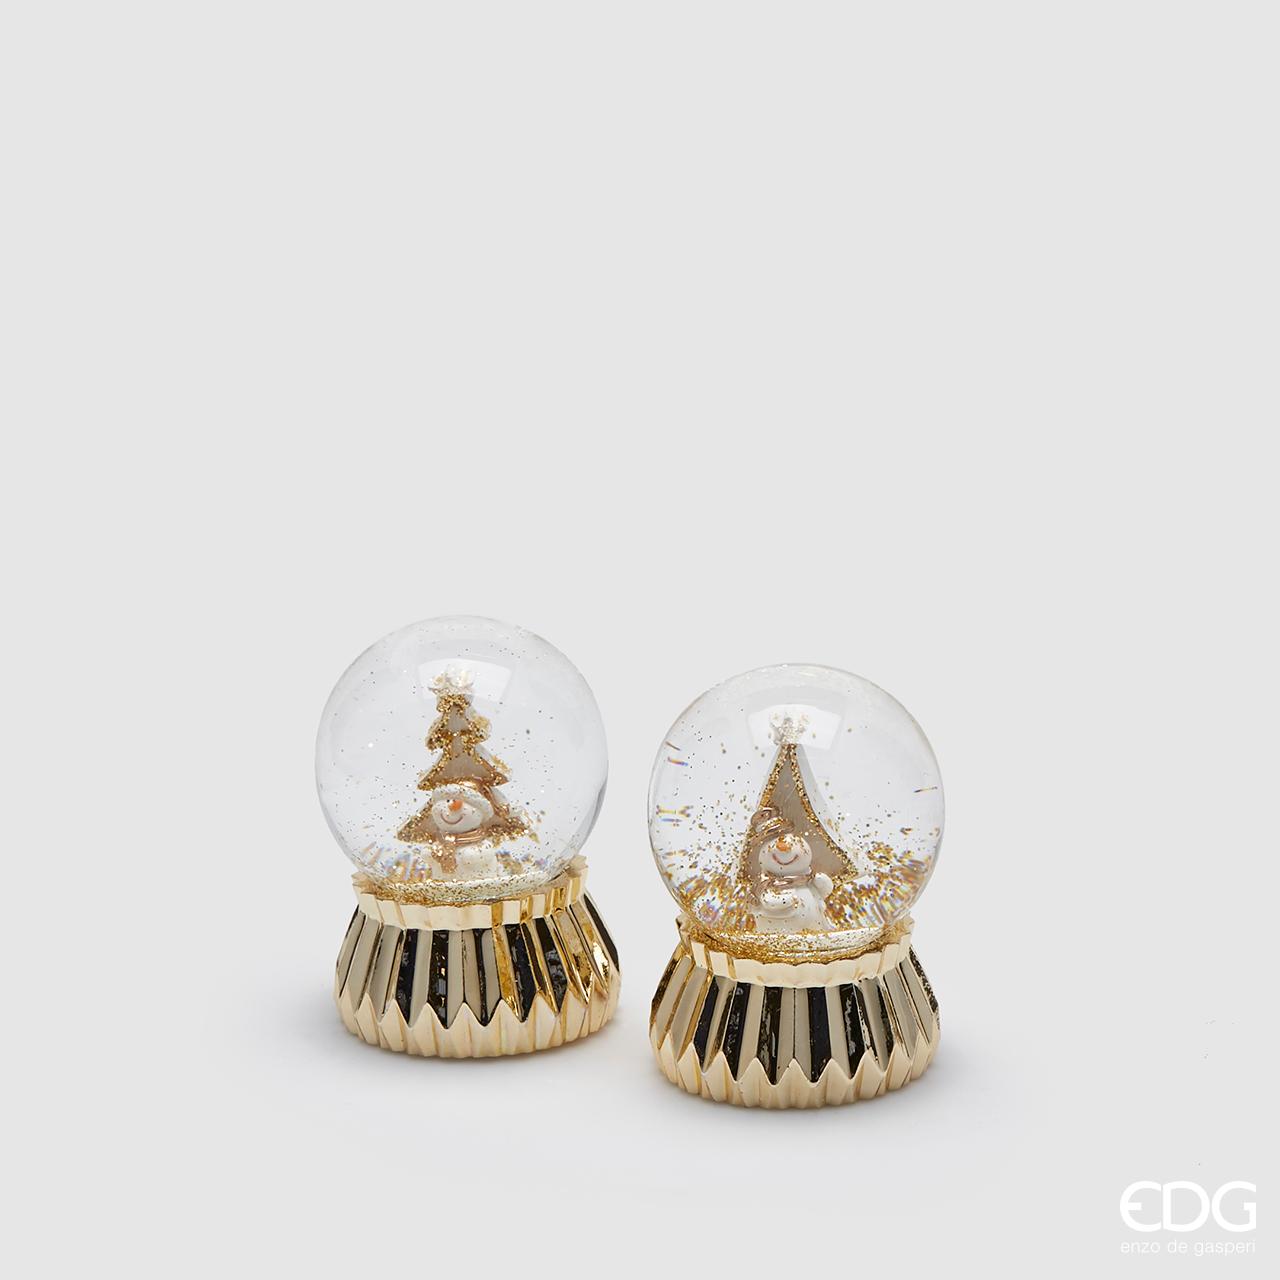 Mini sferacqua con pupazzo di neve e glitter oro. Base in platica oro metal e sfera in vetro. Dimensioni: cm 4 x 6 h. In negozio e online su tuttochic.it